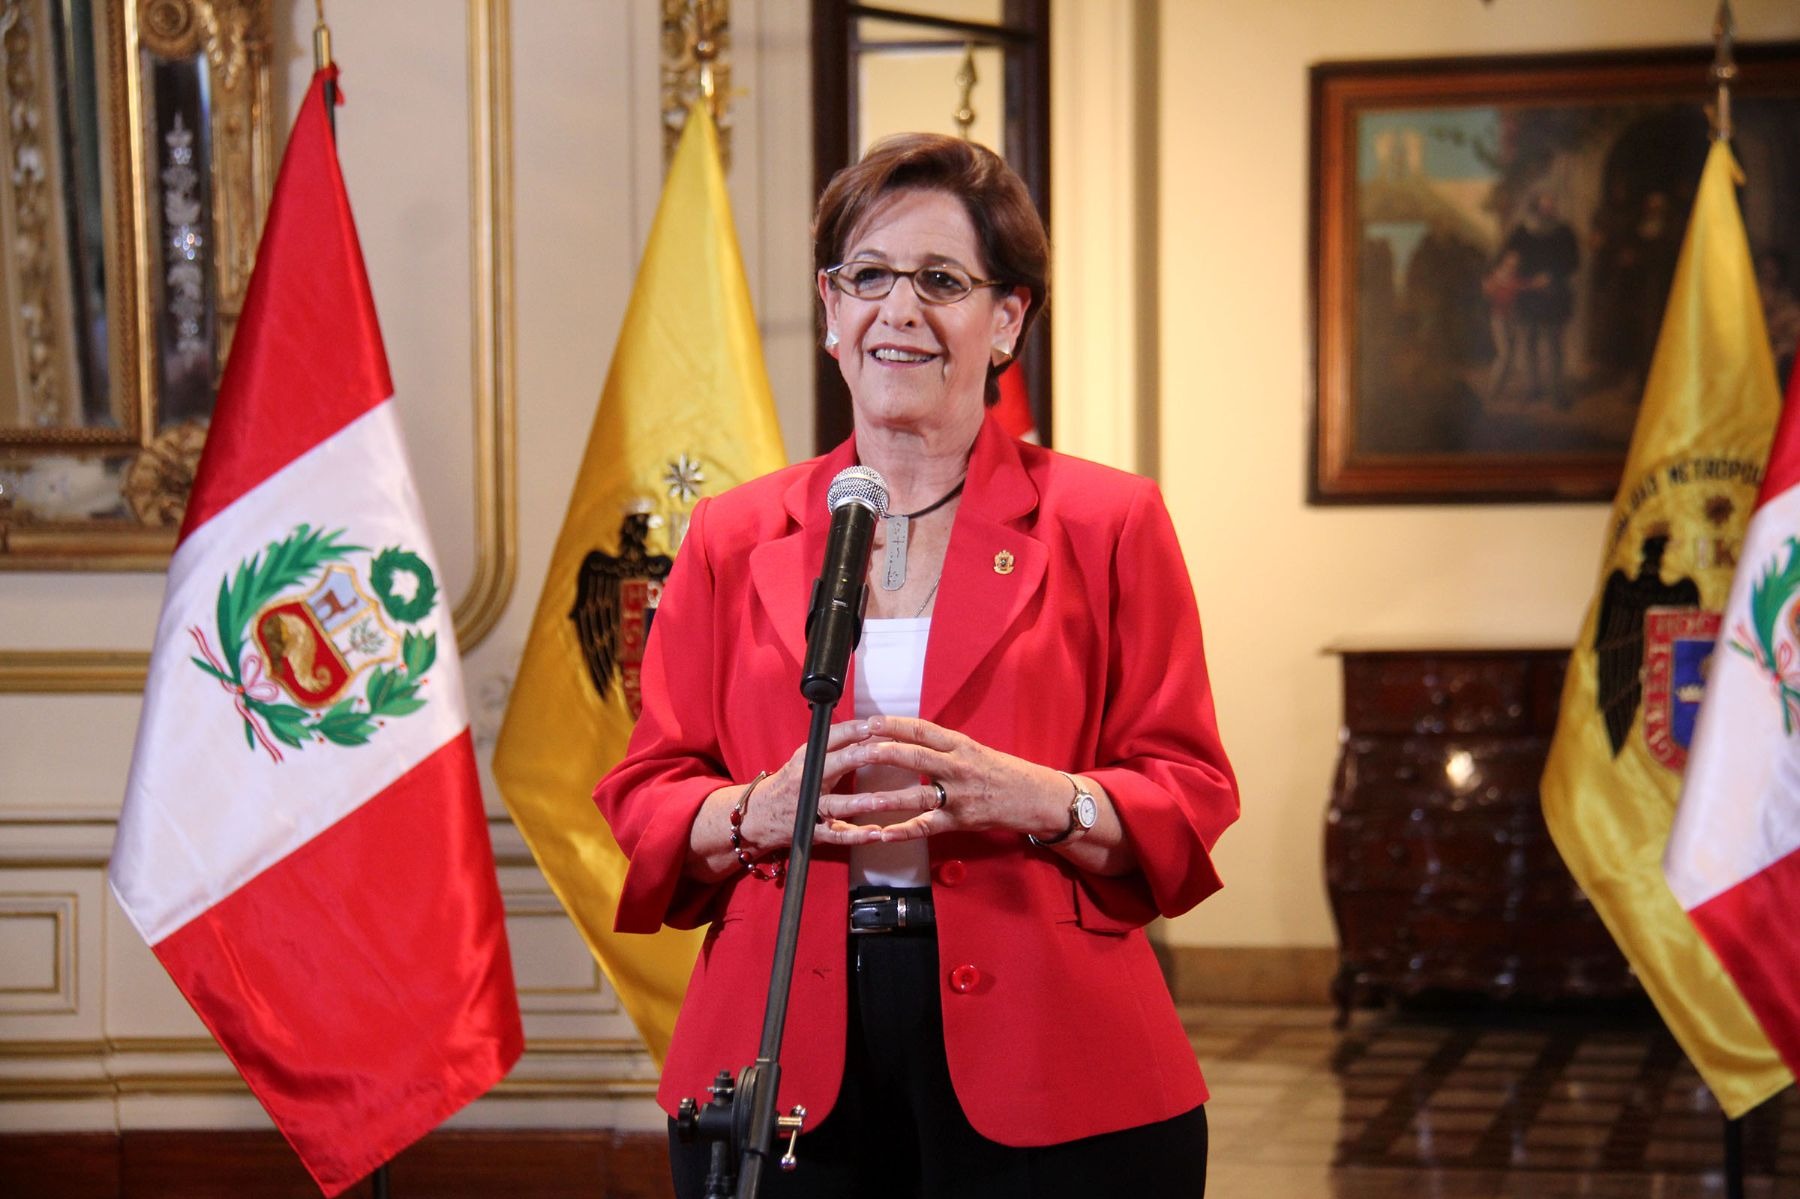 Foto: archivo Gestión, Susana Villarán, entonces alcaldesa de Lima